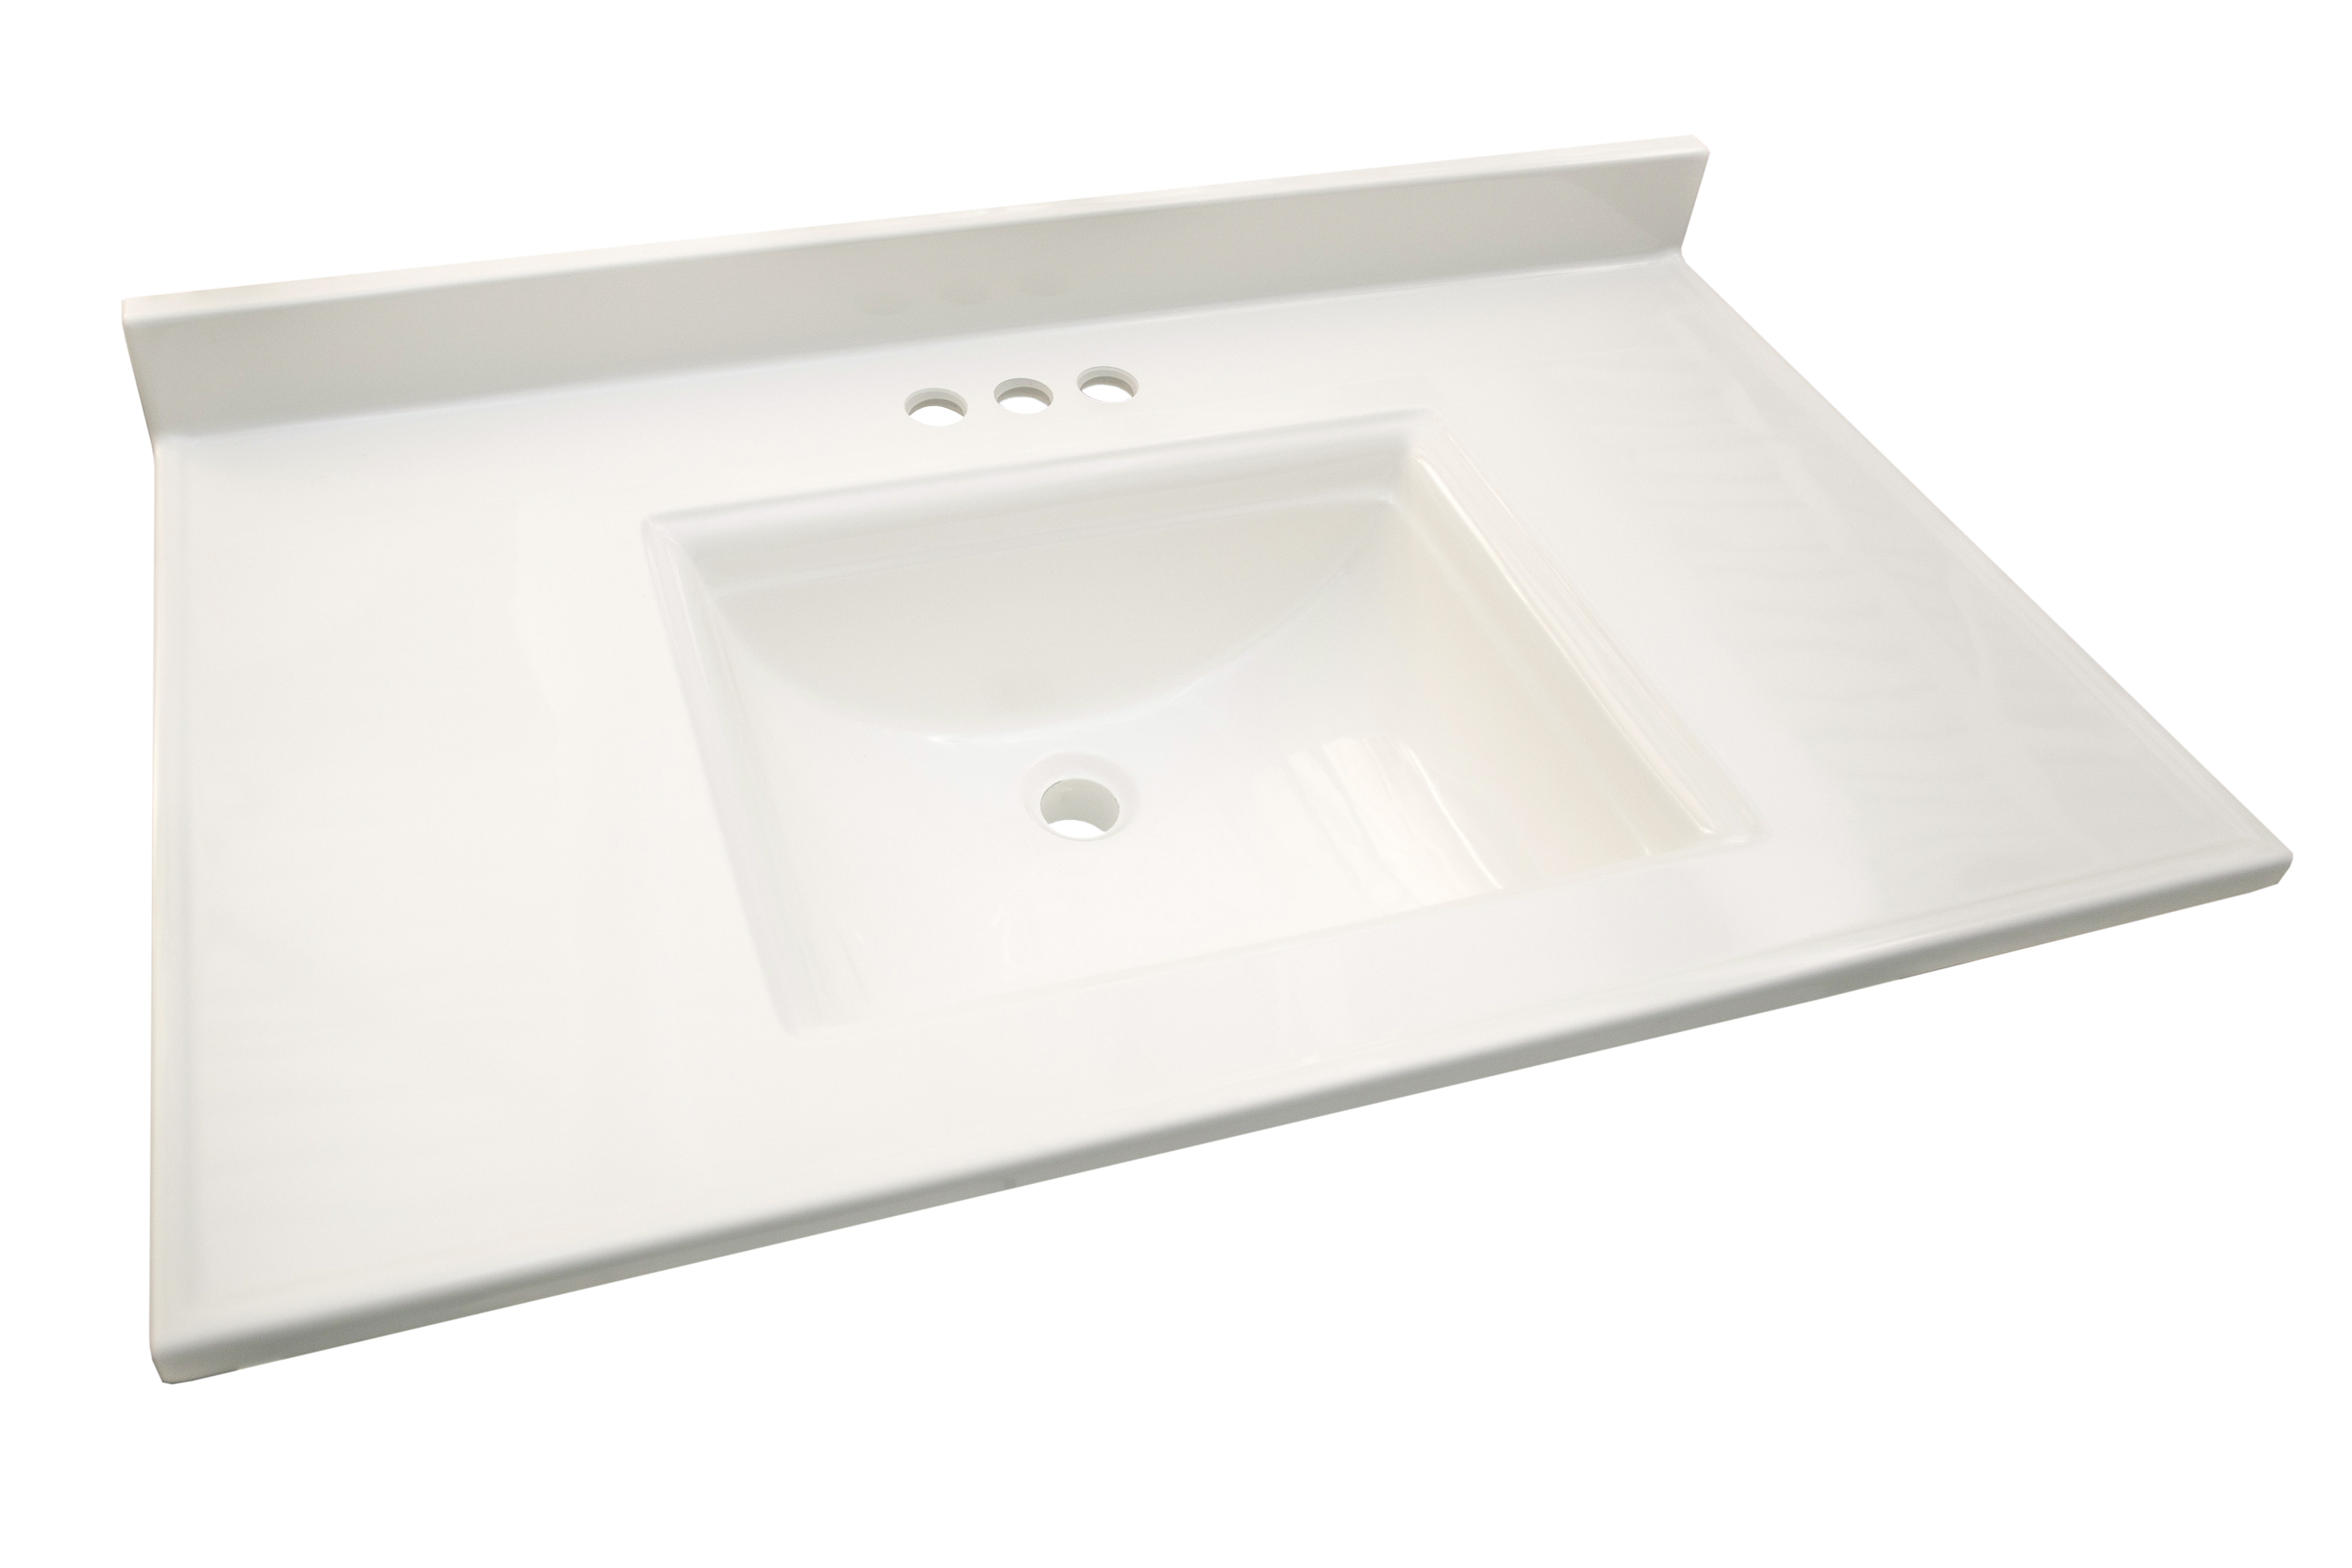 White Cultured Marble Bathroom Vanity Top